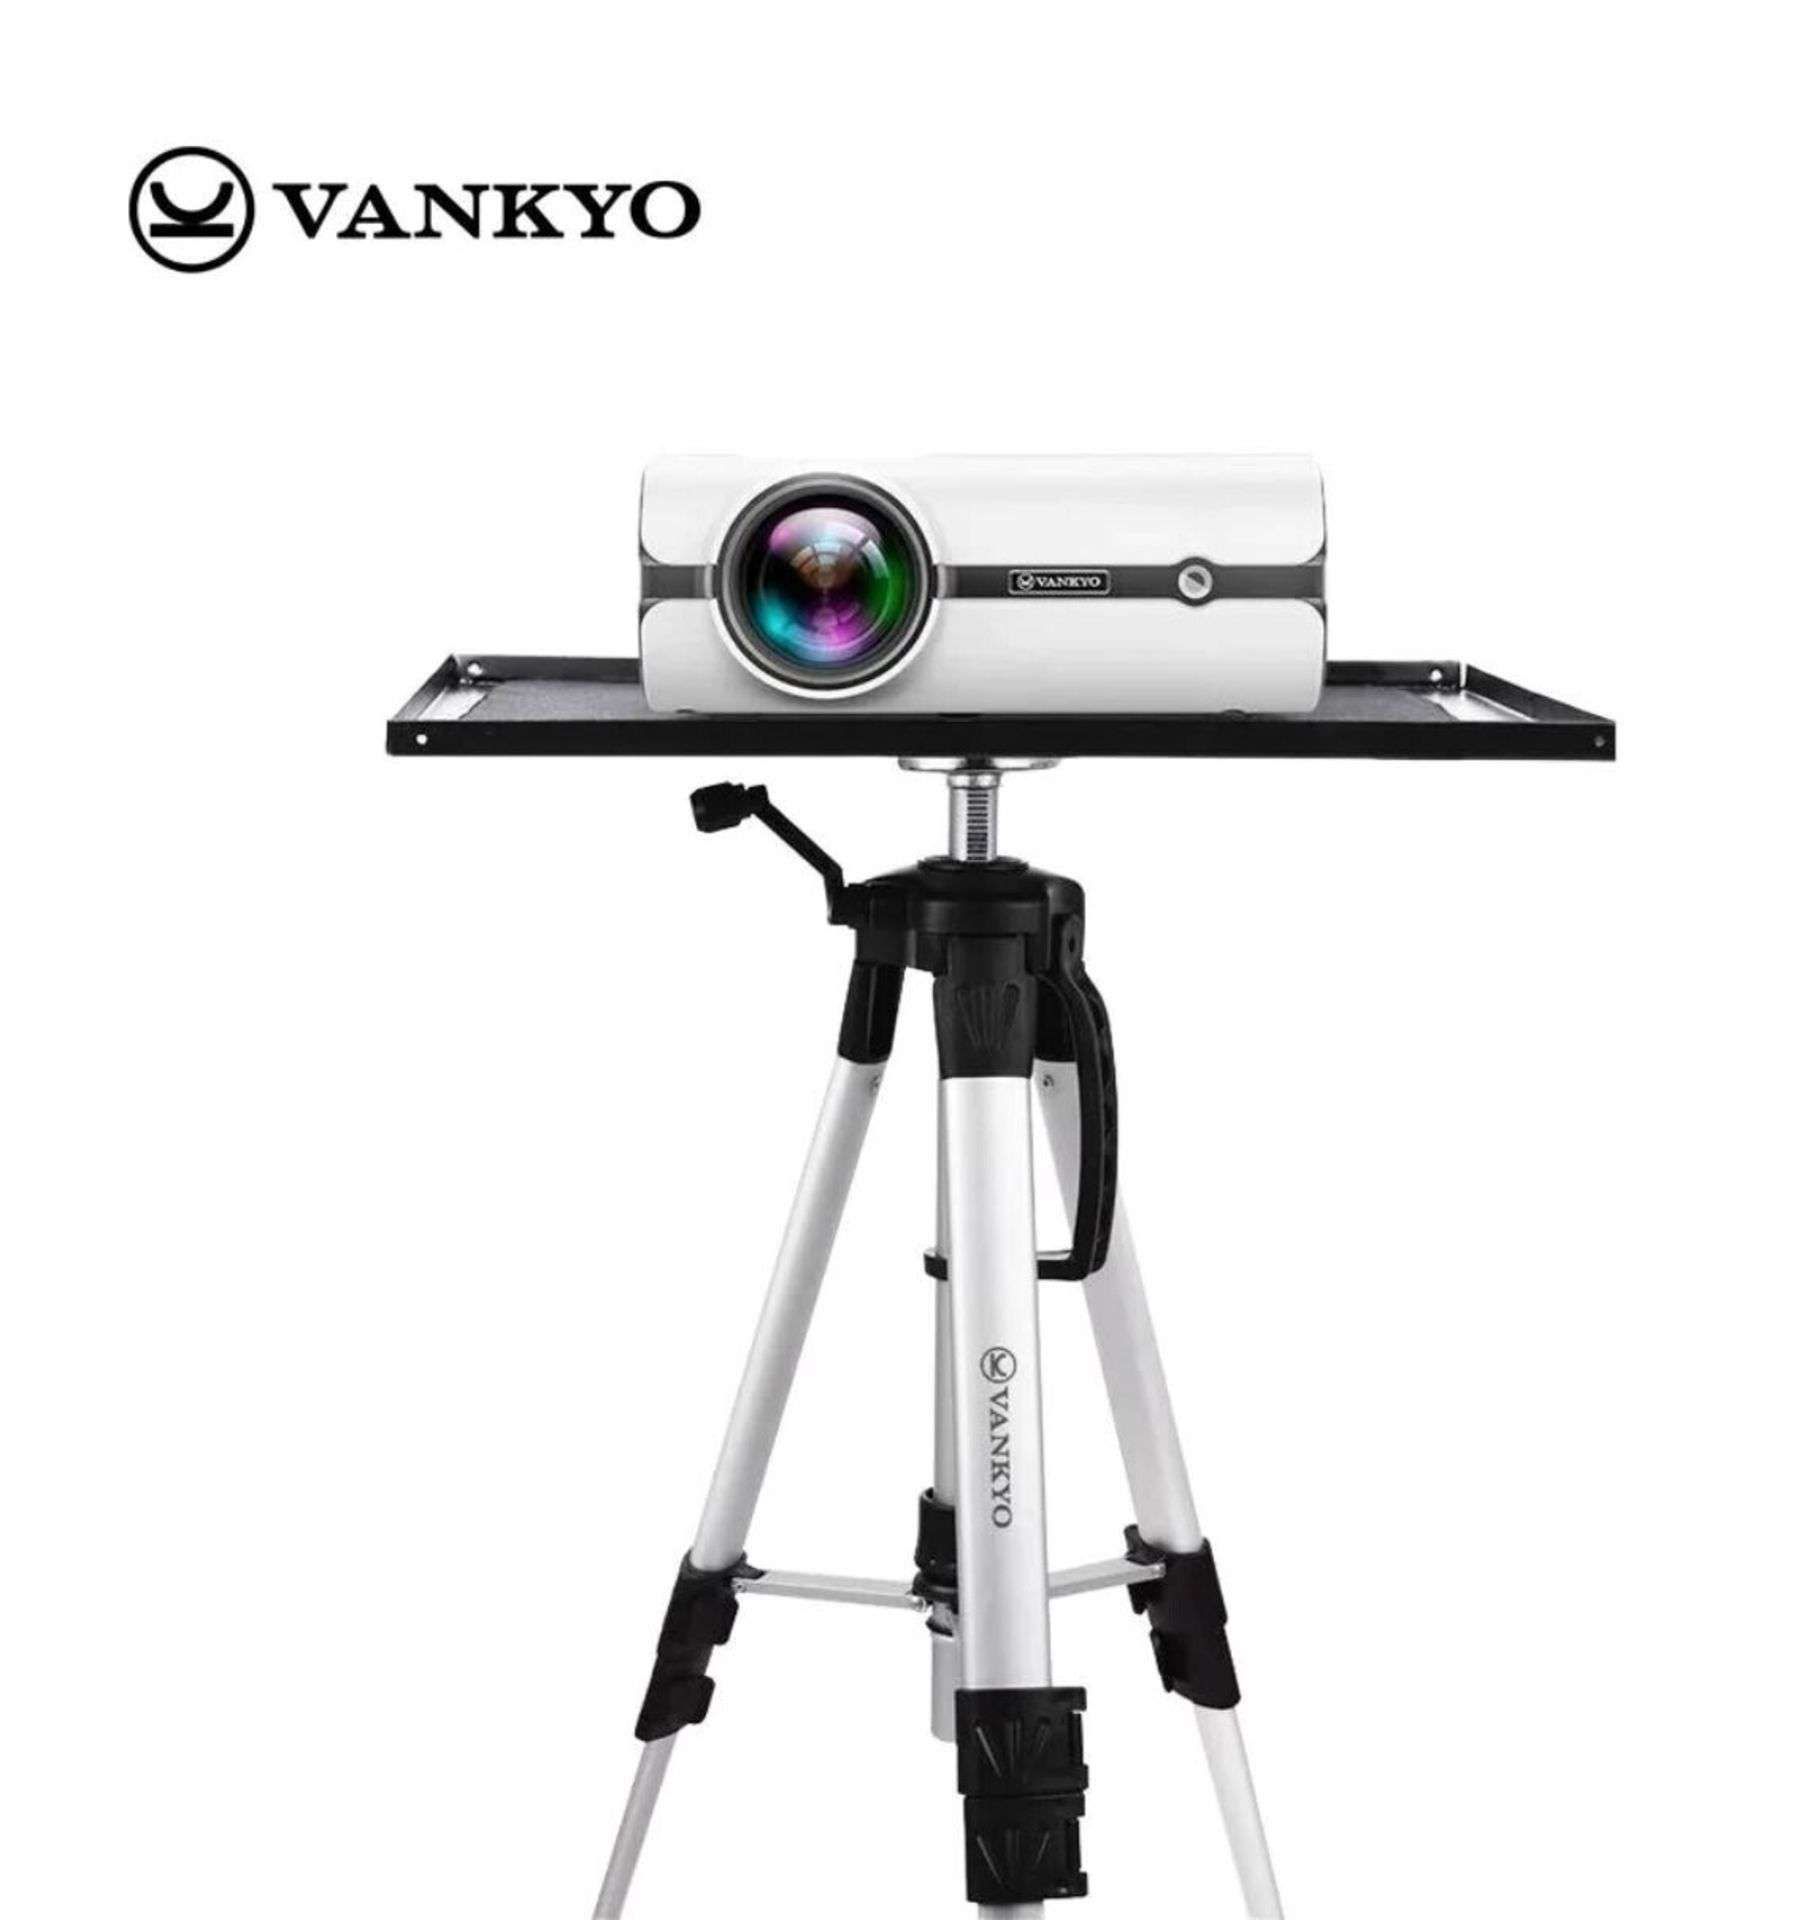 New Boxed VANKYO PT20 Aluminum Tripod Projector Stand. VANKYO’s projector tripod stand is a well-